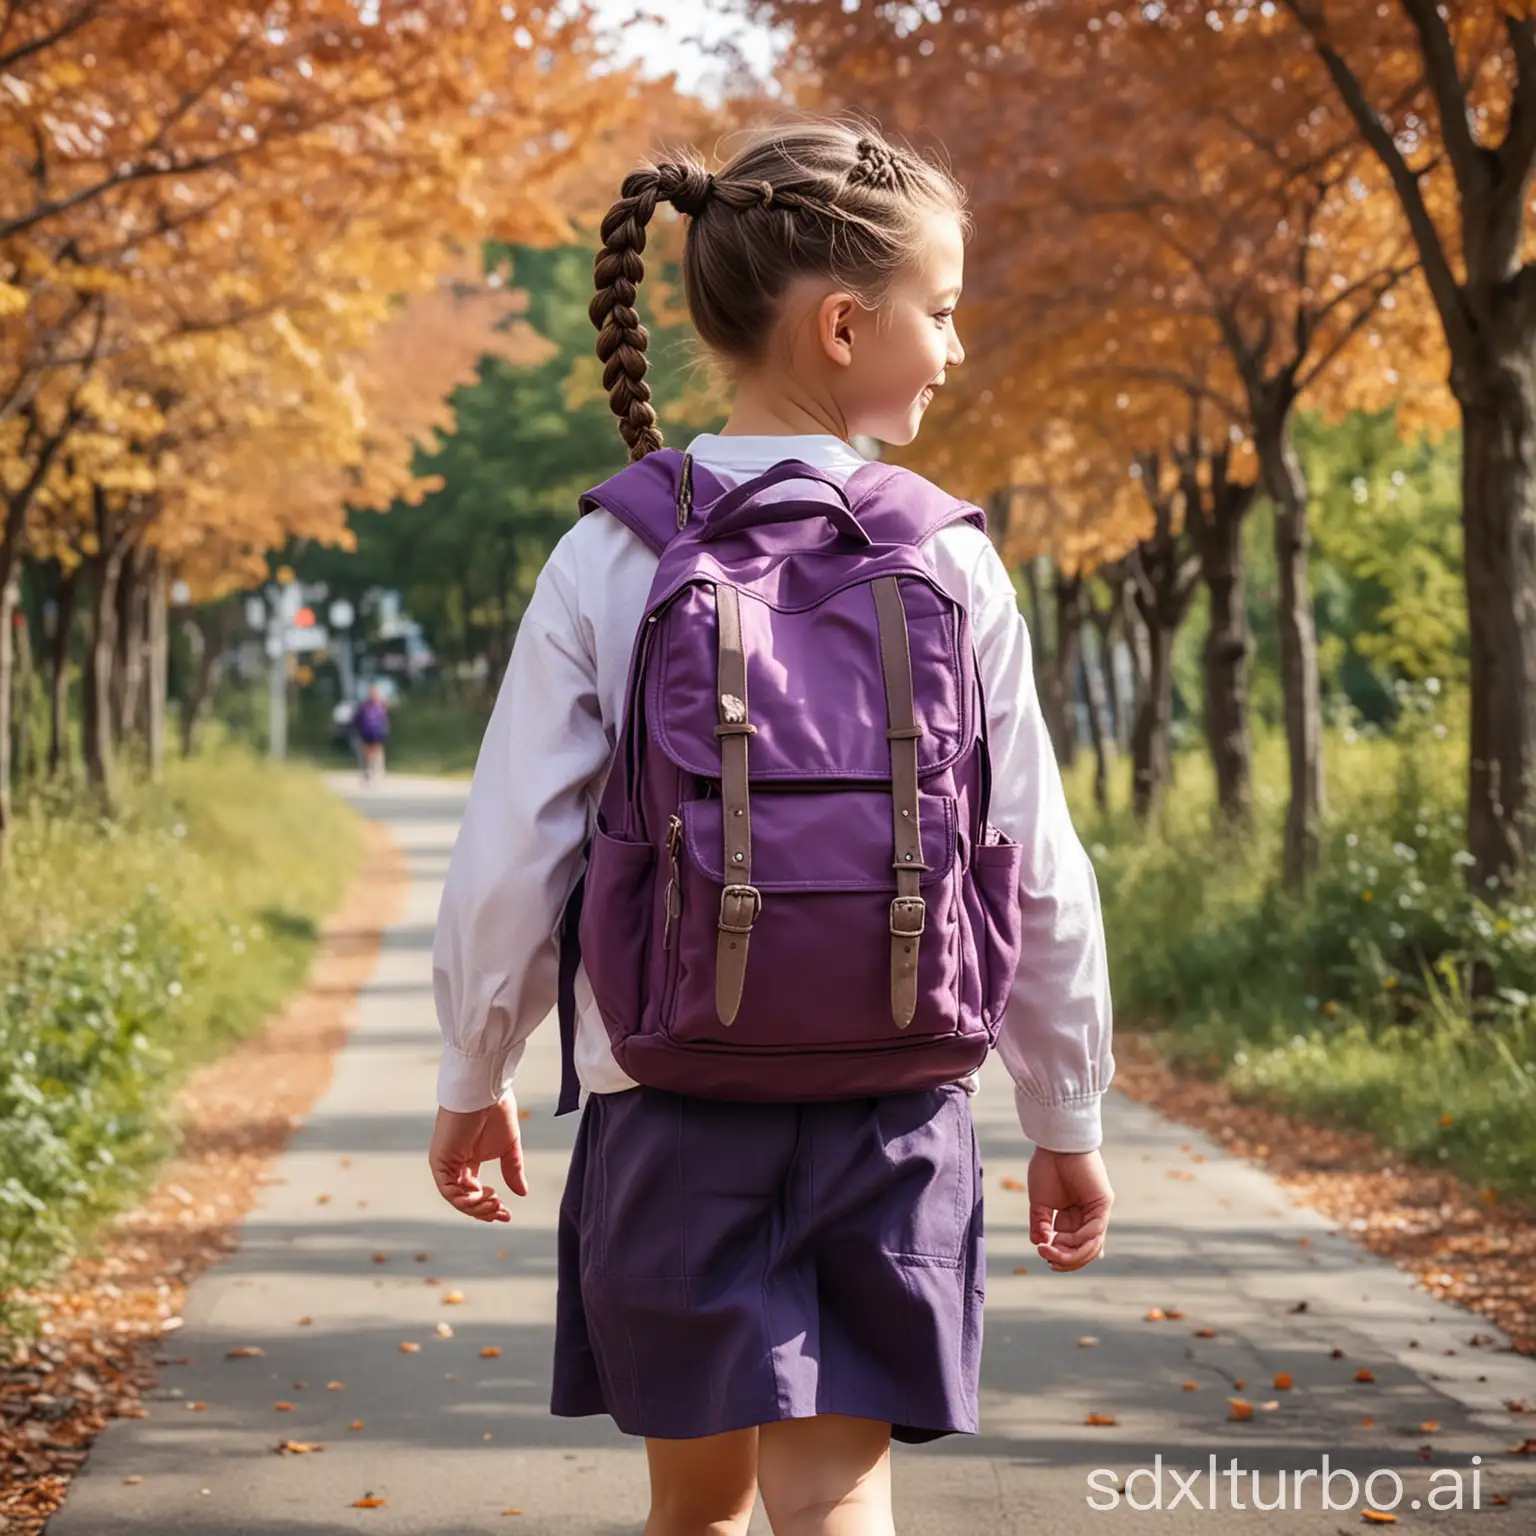 一个小学生女孩，扎了高高的马尾辫，背着紫色的书包，走在有枫树的马路上，微风吹着枫叶像蝴蝶一样翩翩落下，女孩开心快乐的笑着